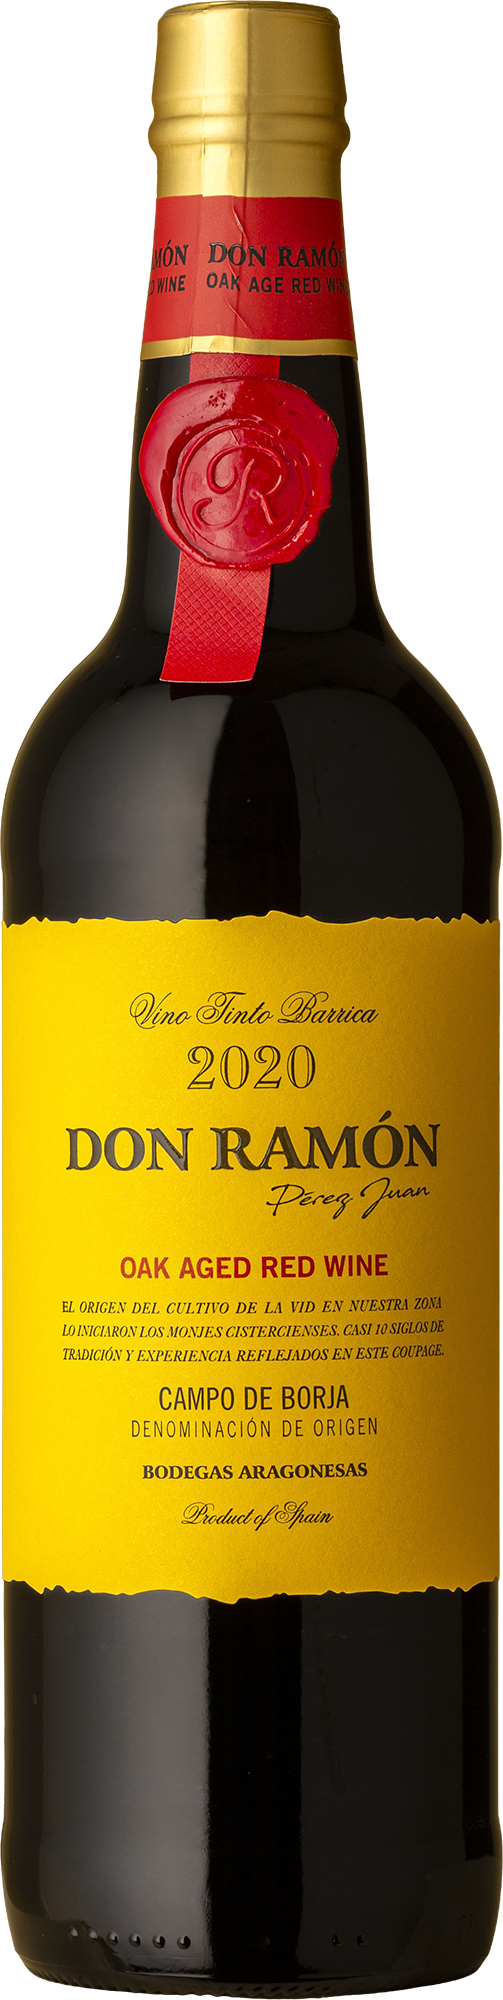 Don Ramon - Grenache / Tempranillo 2020 Red Wine